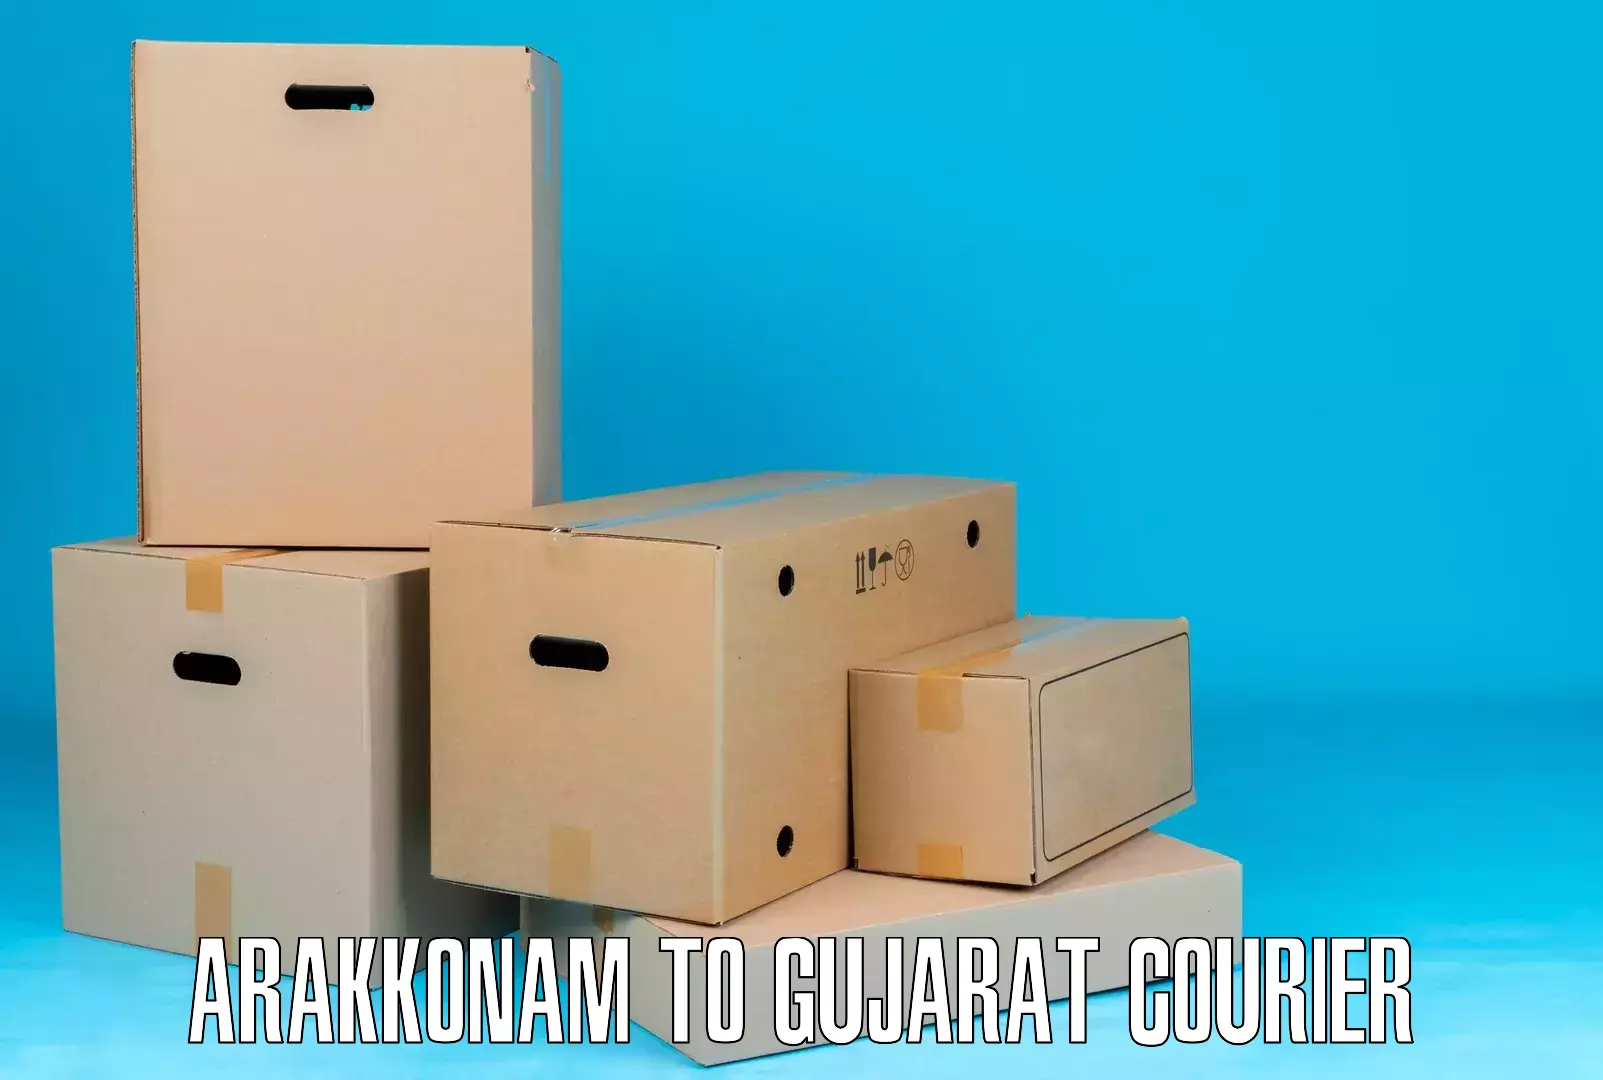 Logistics efficiency Arakkonam to IIIT Surat